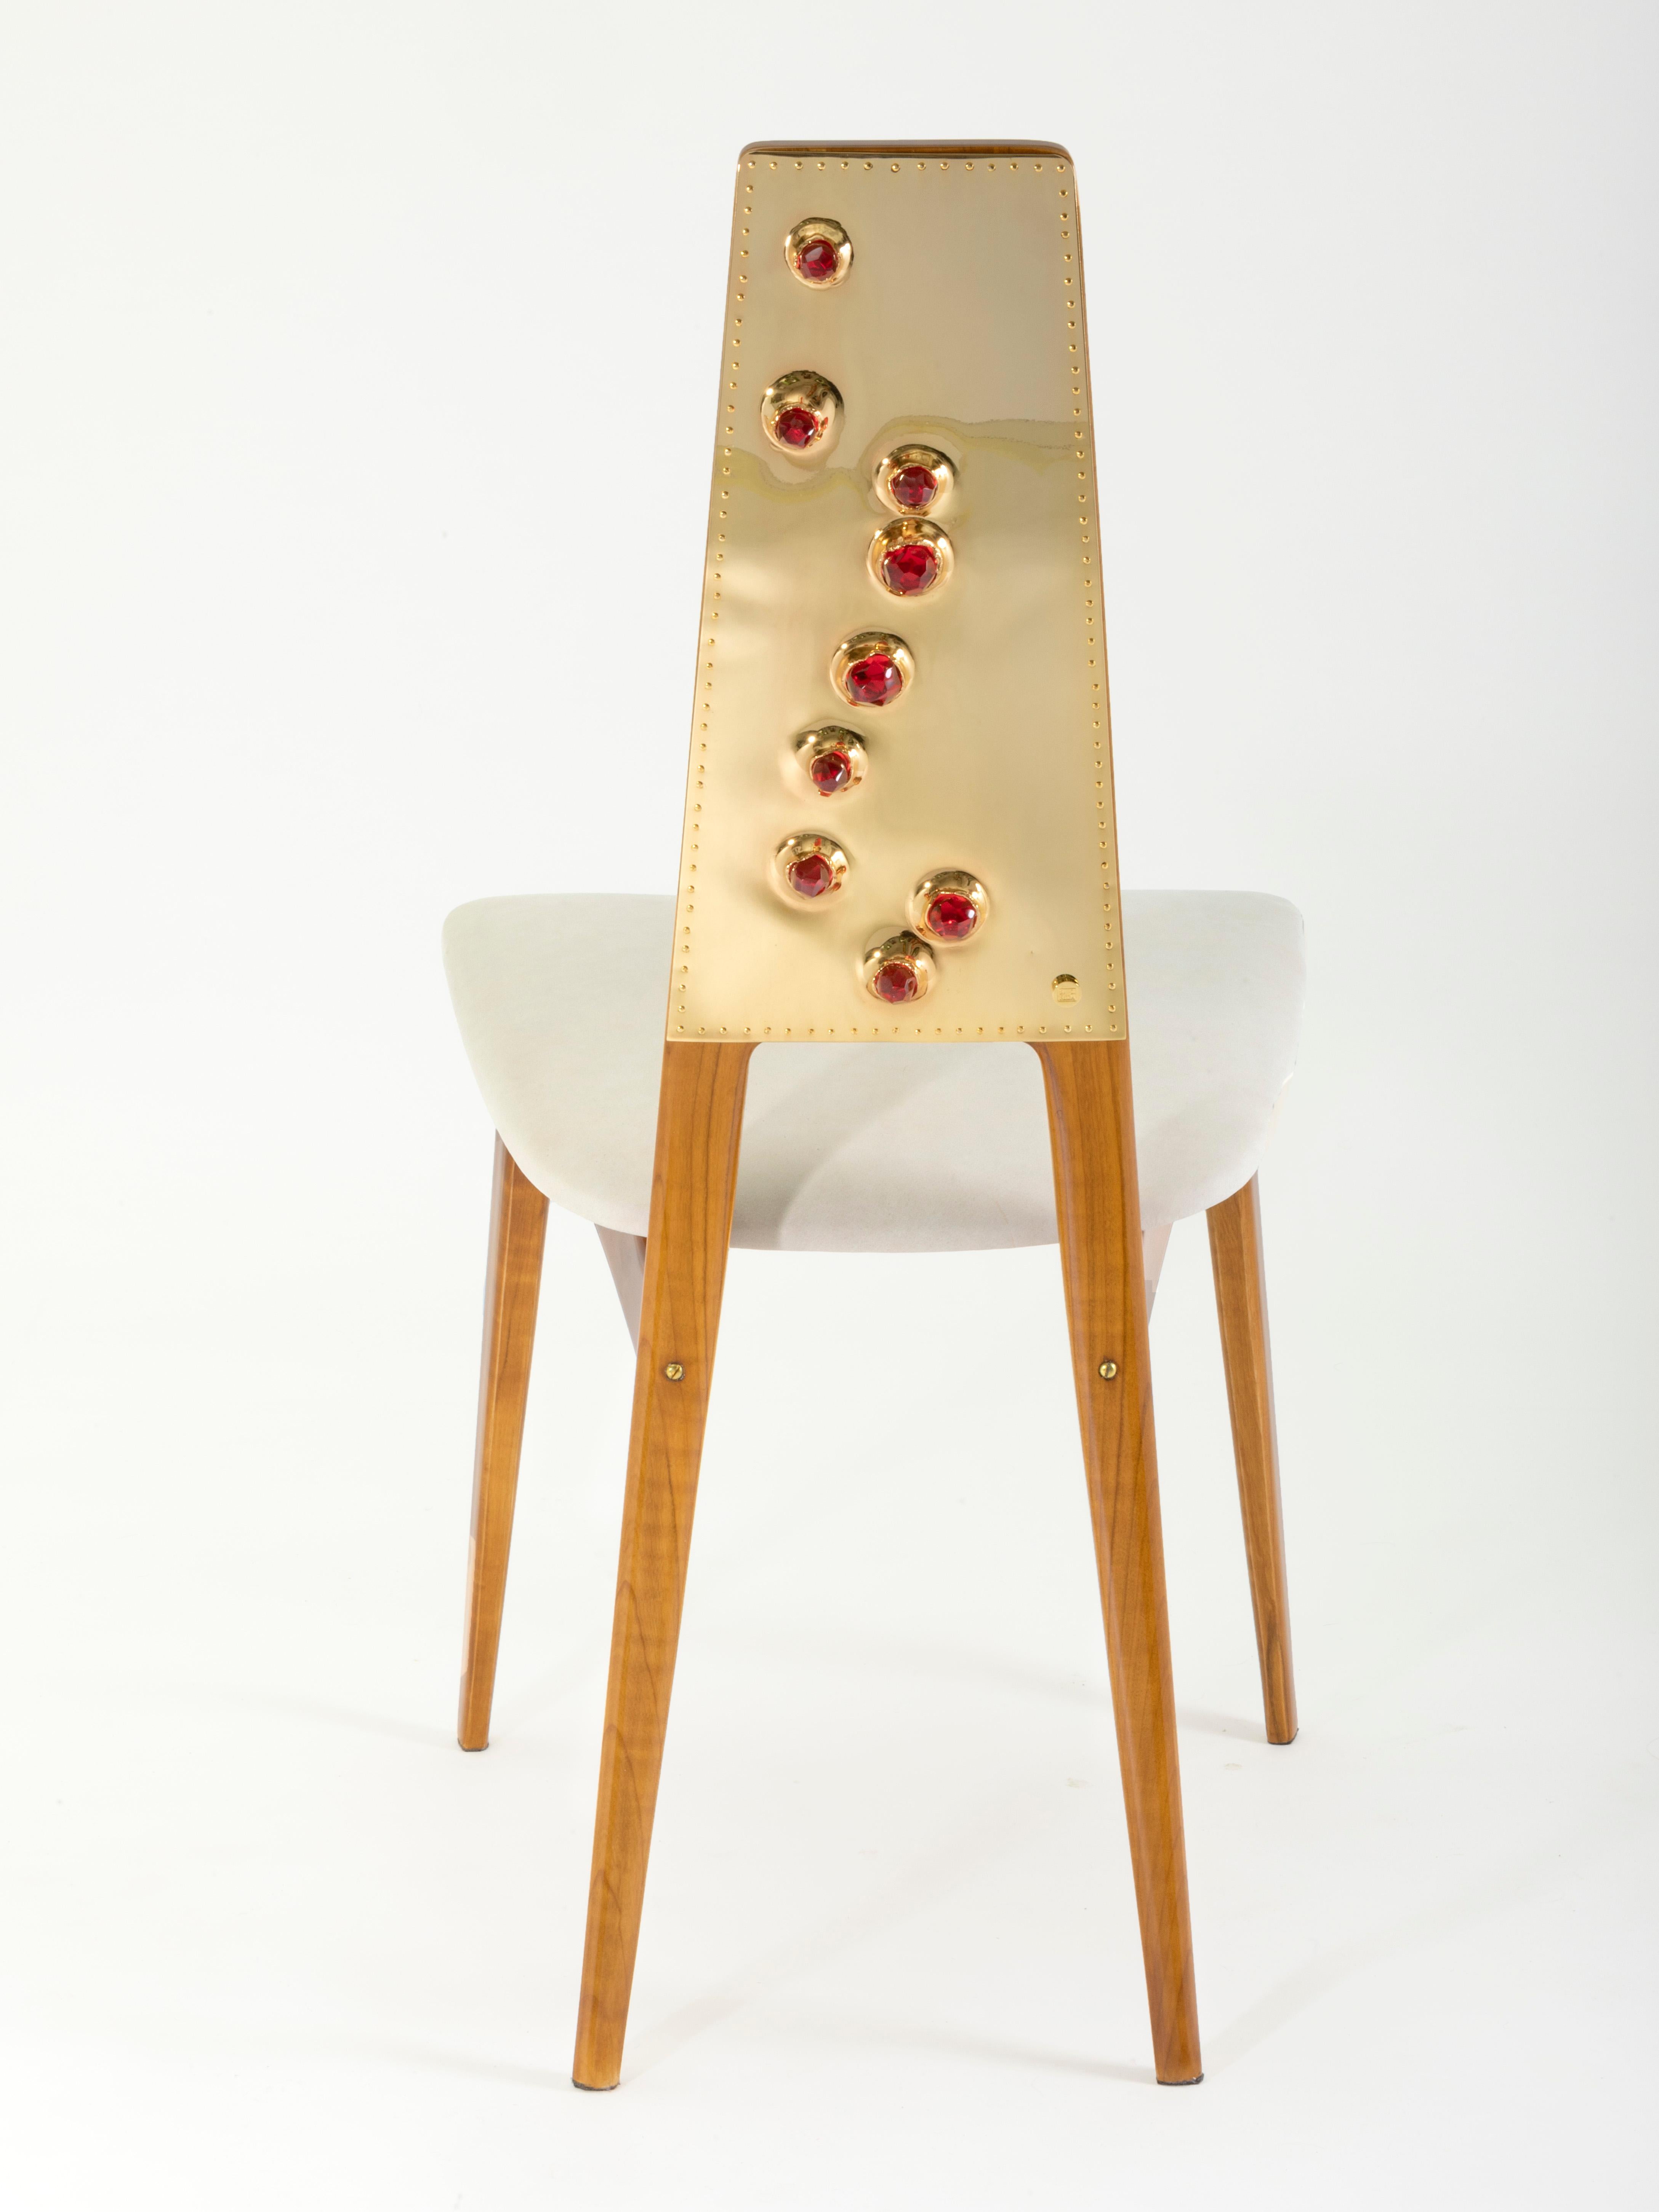 Chaise simple 'HUBBLE RED' (possibilité de set : 6 pièces)

Chaise en cerisier fabriquée à la main en Italie, laquée et polie à la main avec de la gomme-laque. Le siège a été spécialement conçu avec un rembourrage souple recouvert à la main de cuir